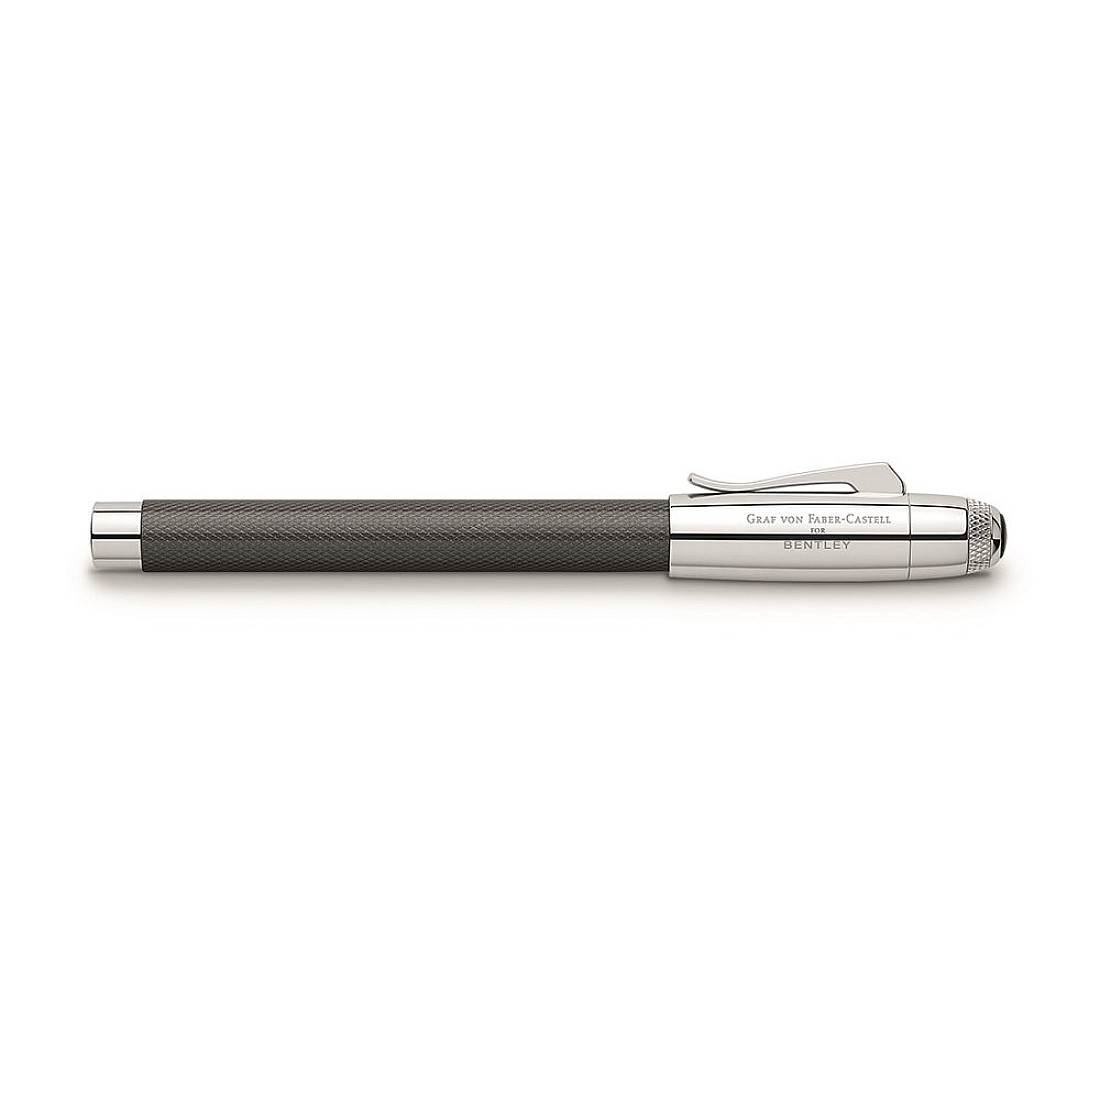 Graf von Faber-Castell for Bentley Tungsten Gray Fountain pen